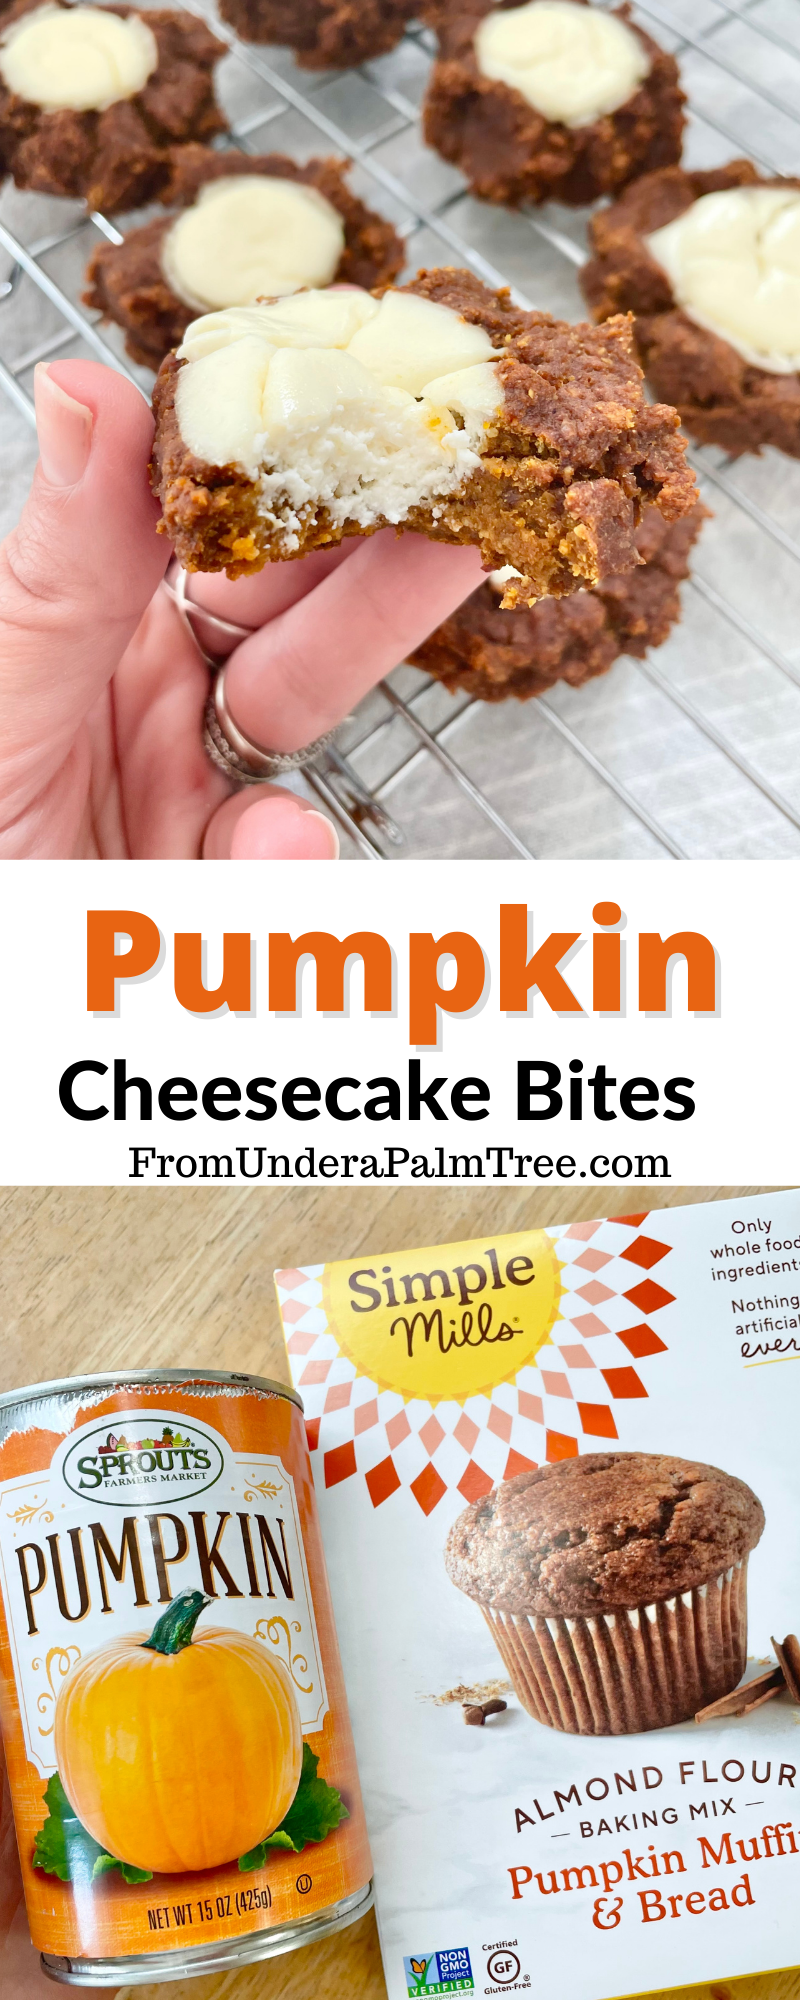 pumpkin muffins | healthy pumpkin muffins | pumpkin cheesecake bits | pumpkin cream cheese bites | pumpkin cream cheese muffins | low calorie pumpkin muffins | pumpkin recipe | easy pumpkin recipes | easy pumpkin muffins | 